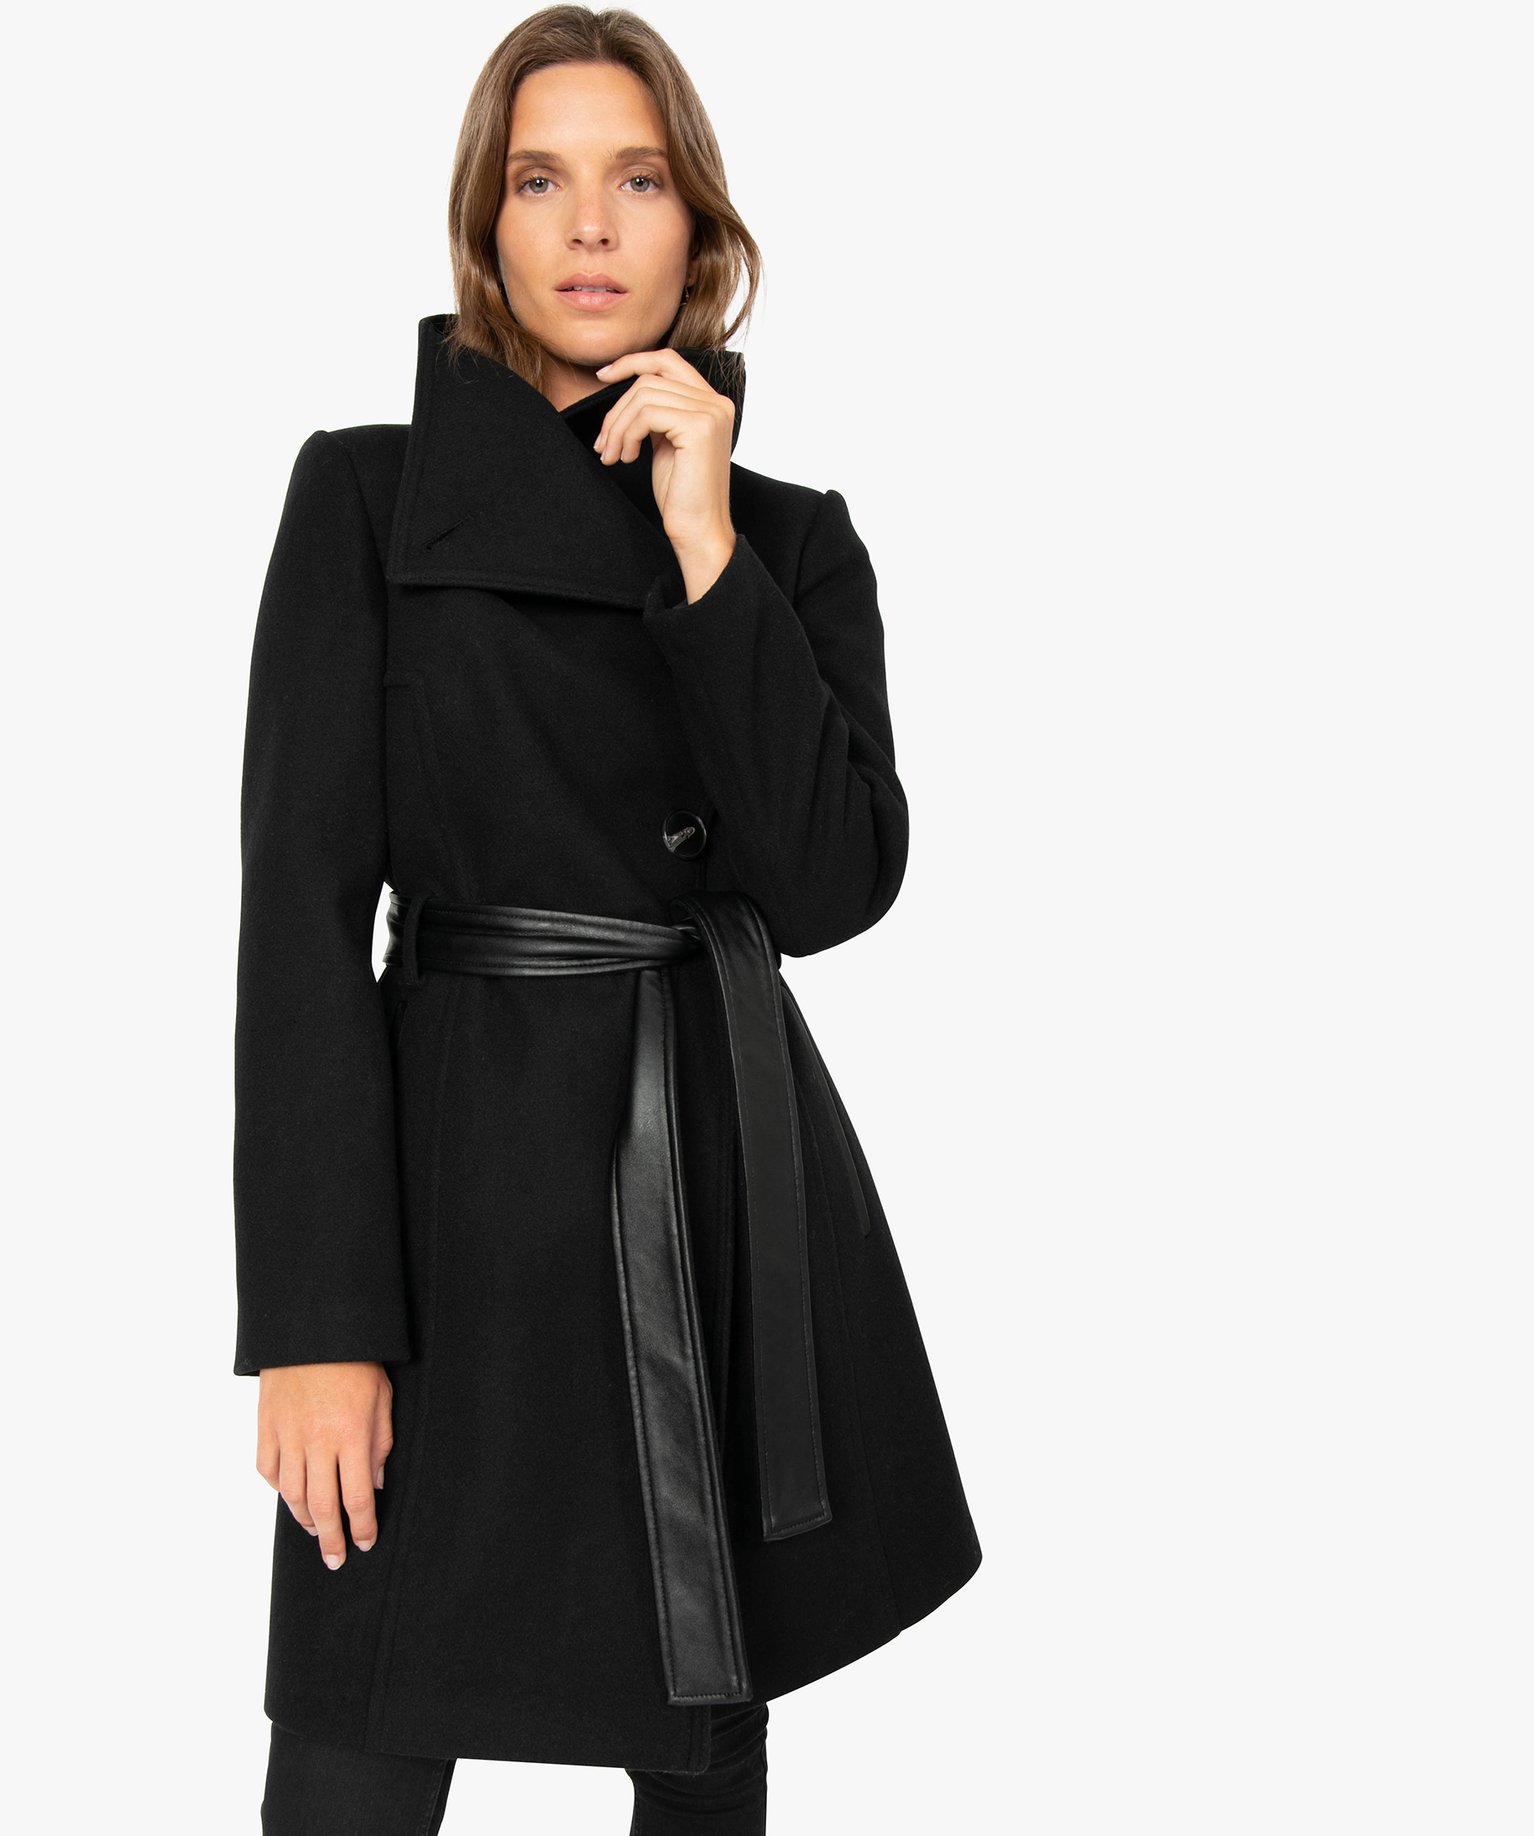 manteau noire laine femme